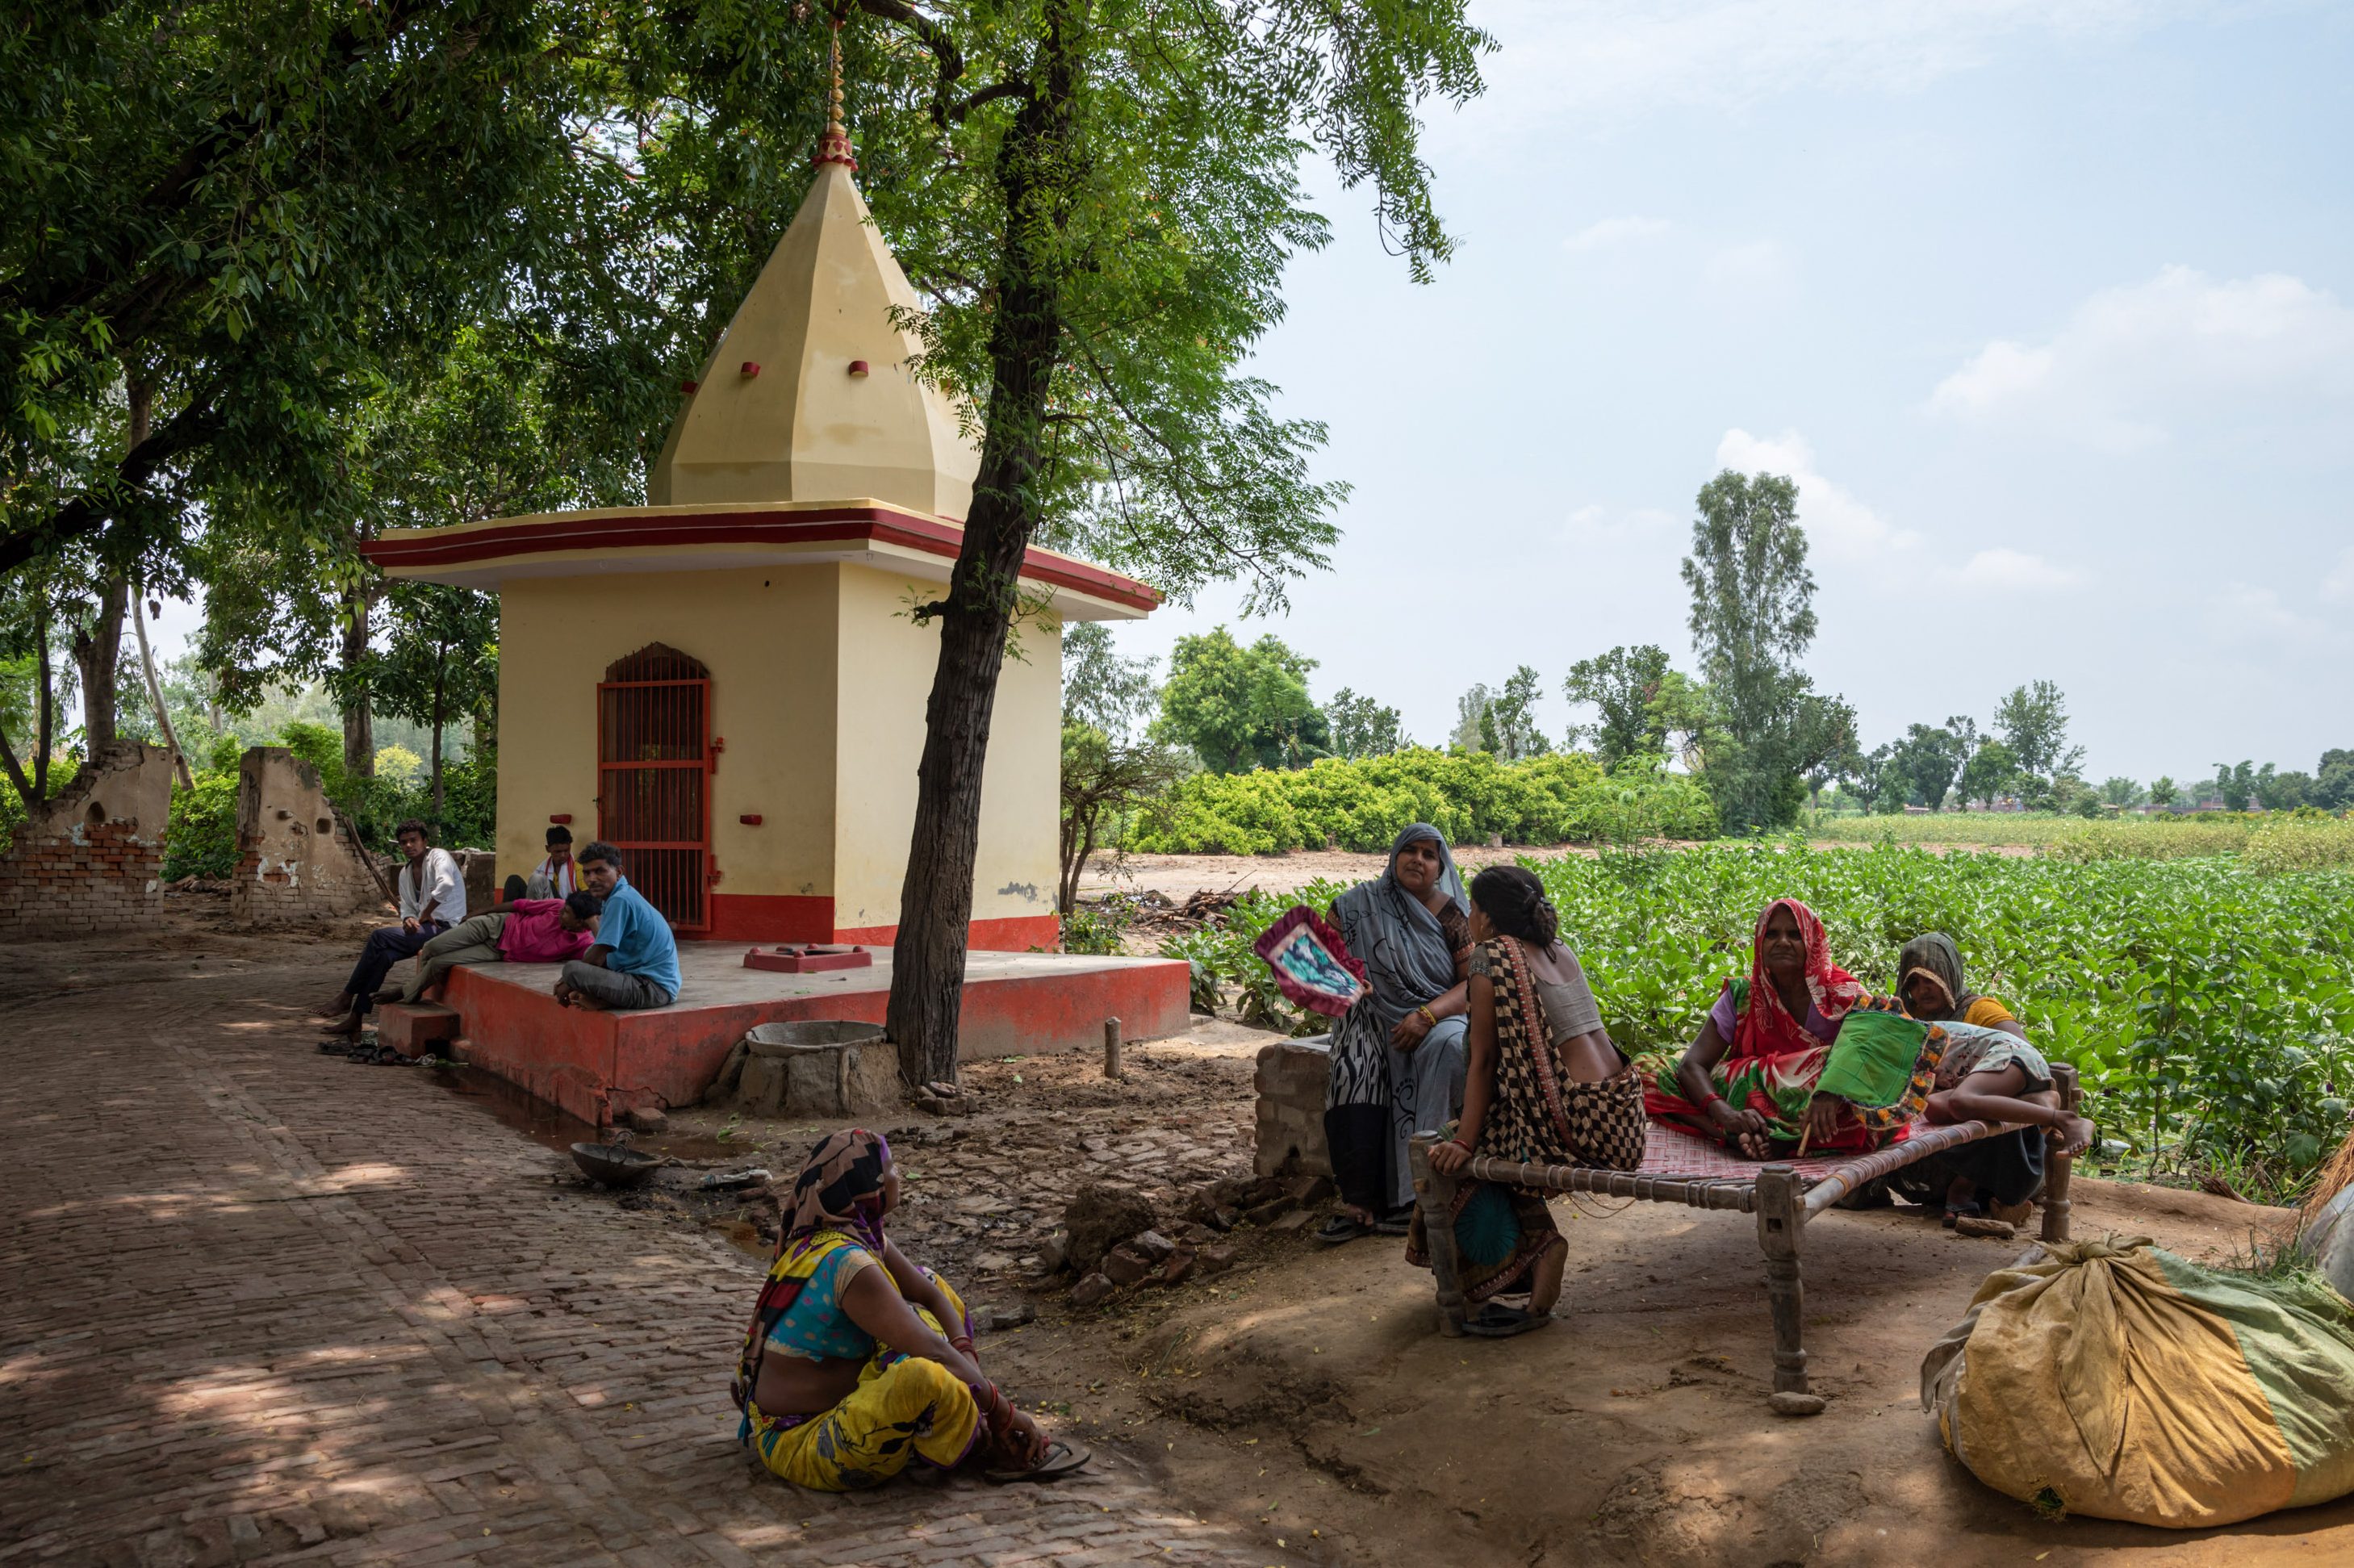 يجلس الناس تحت شجرة بانيان بجوار المعبد هربًا من الحرارة.